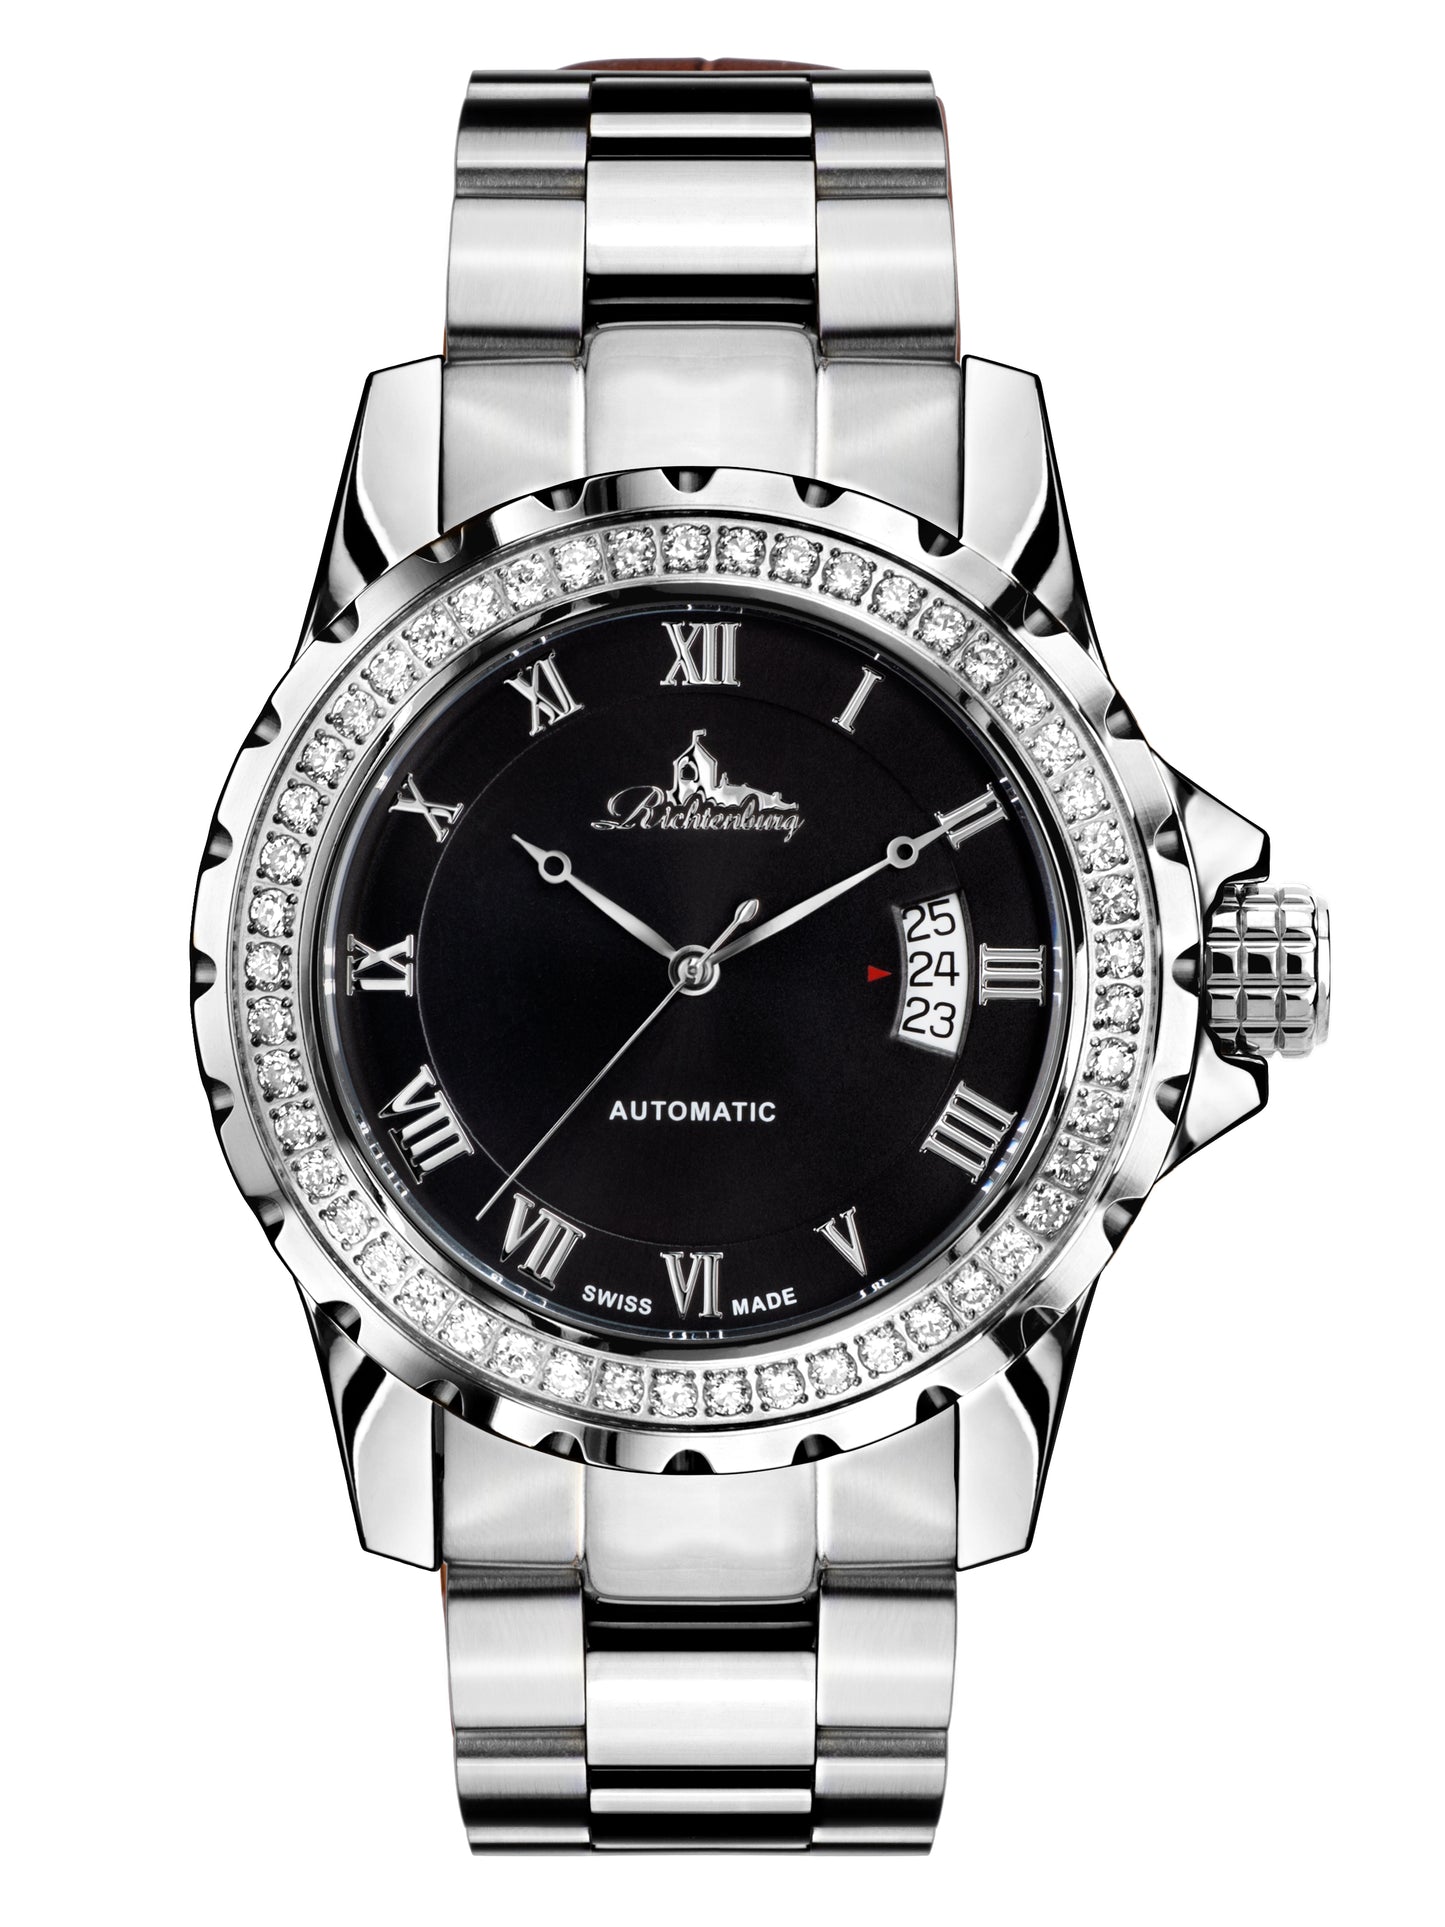 Automatic watches — Clasica — Richtenburg — steel black